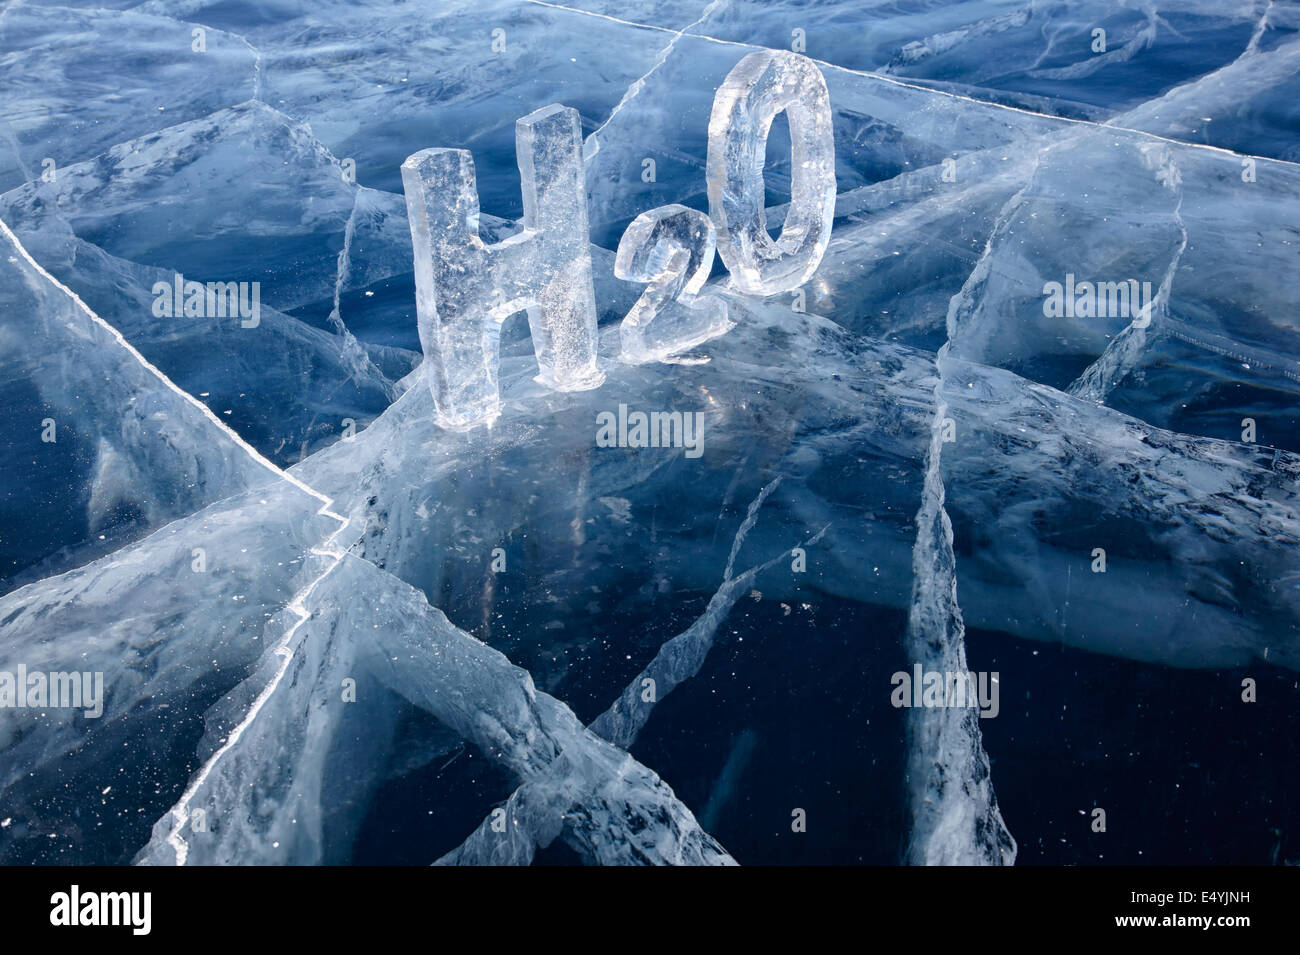 Chemische Formel von Wasser H2O Stockfoto